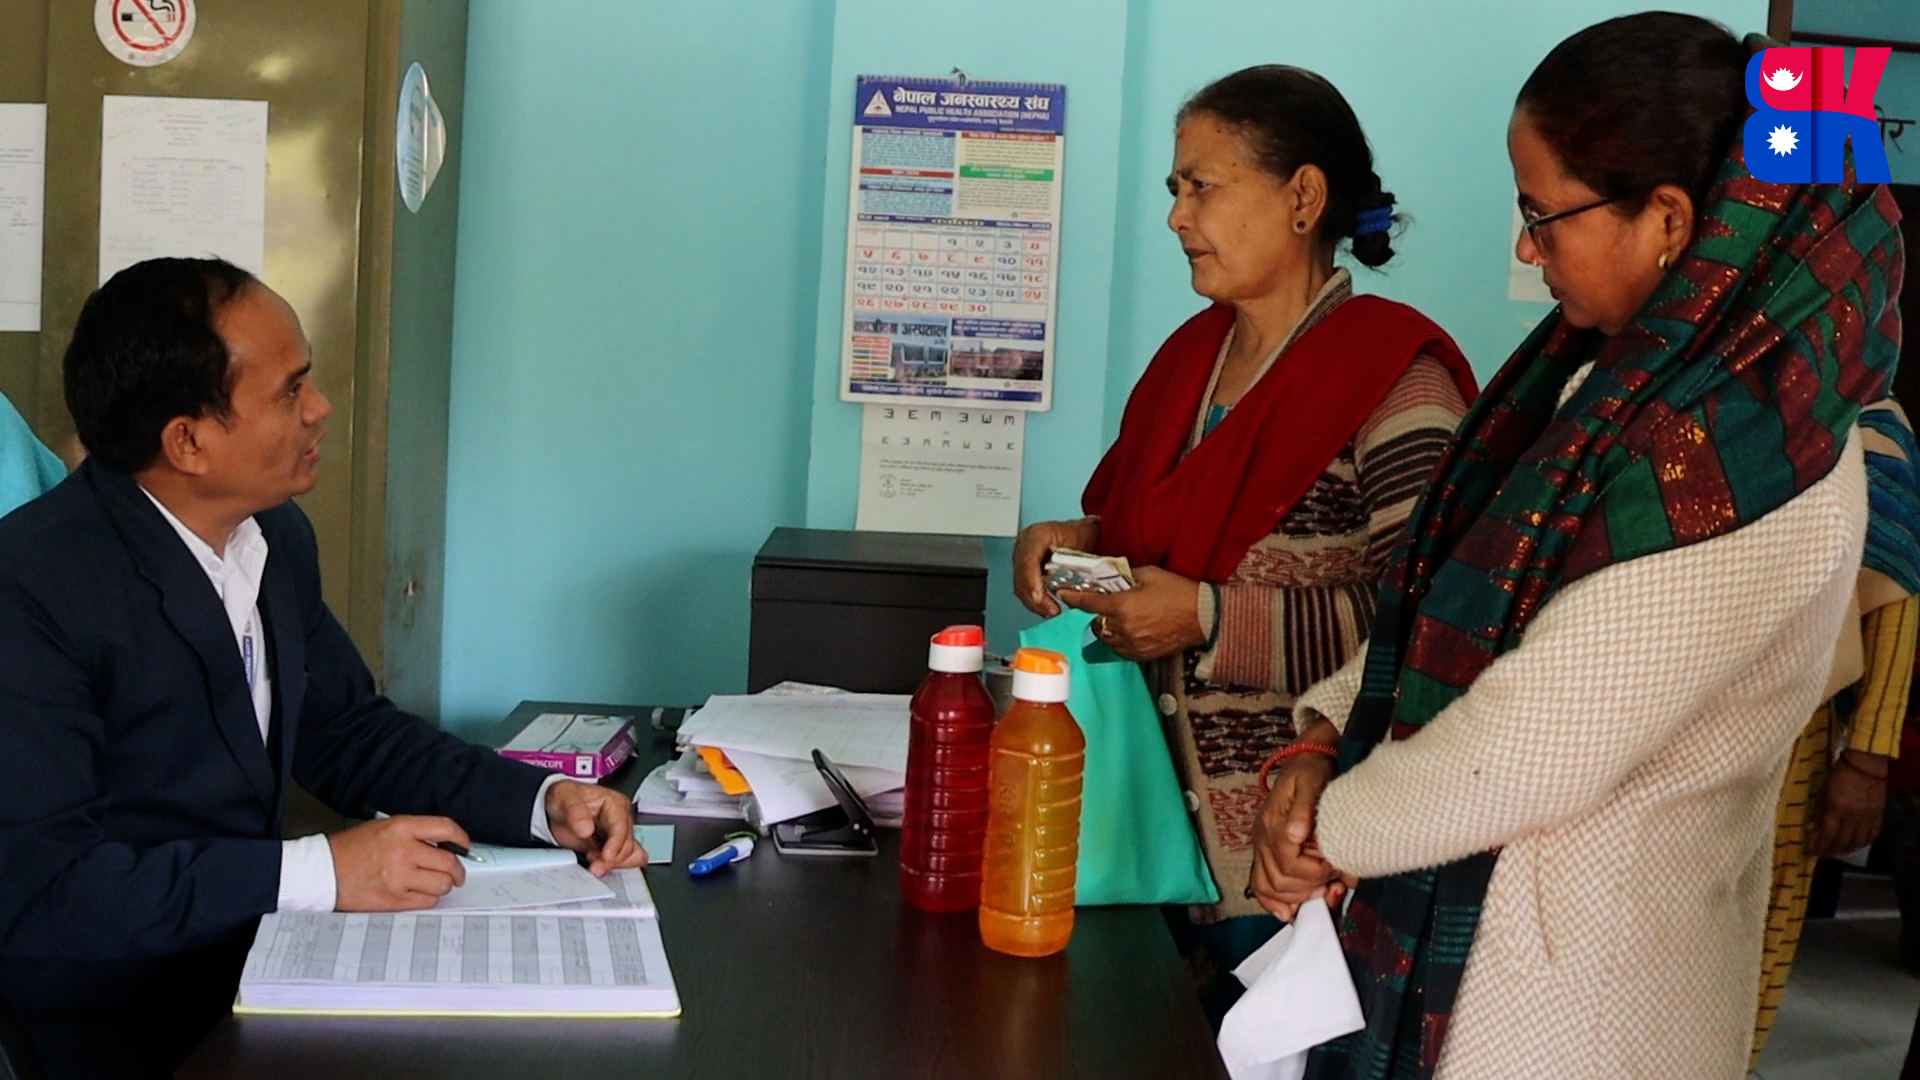 दुई वर्षमा ९२ हजार ३४२ जनाले लिए धनगढीमा विशेषज्ञ वडा क्लिनिक बाट उपचार सेवा